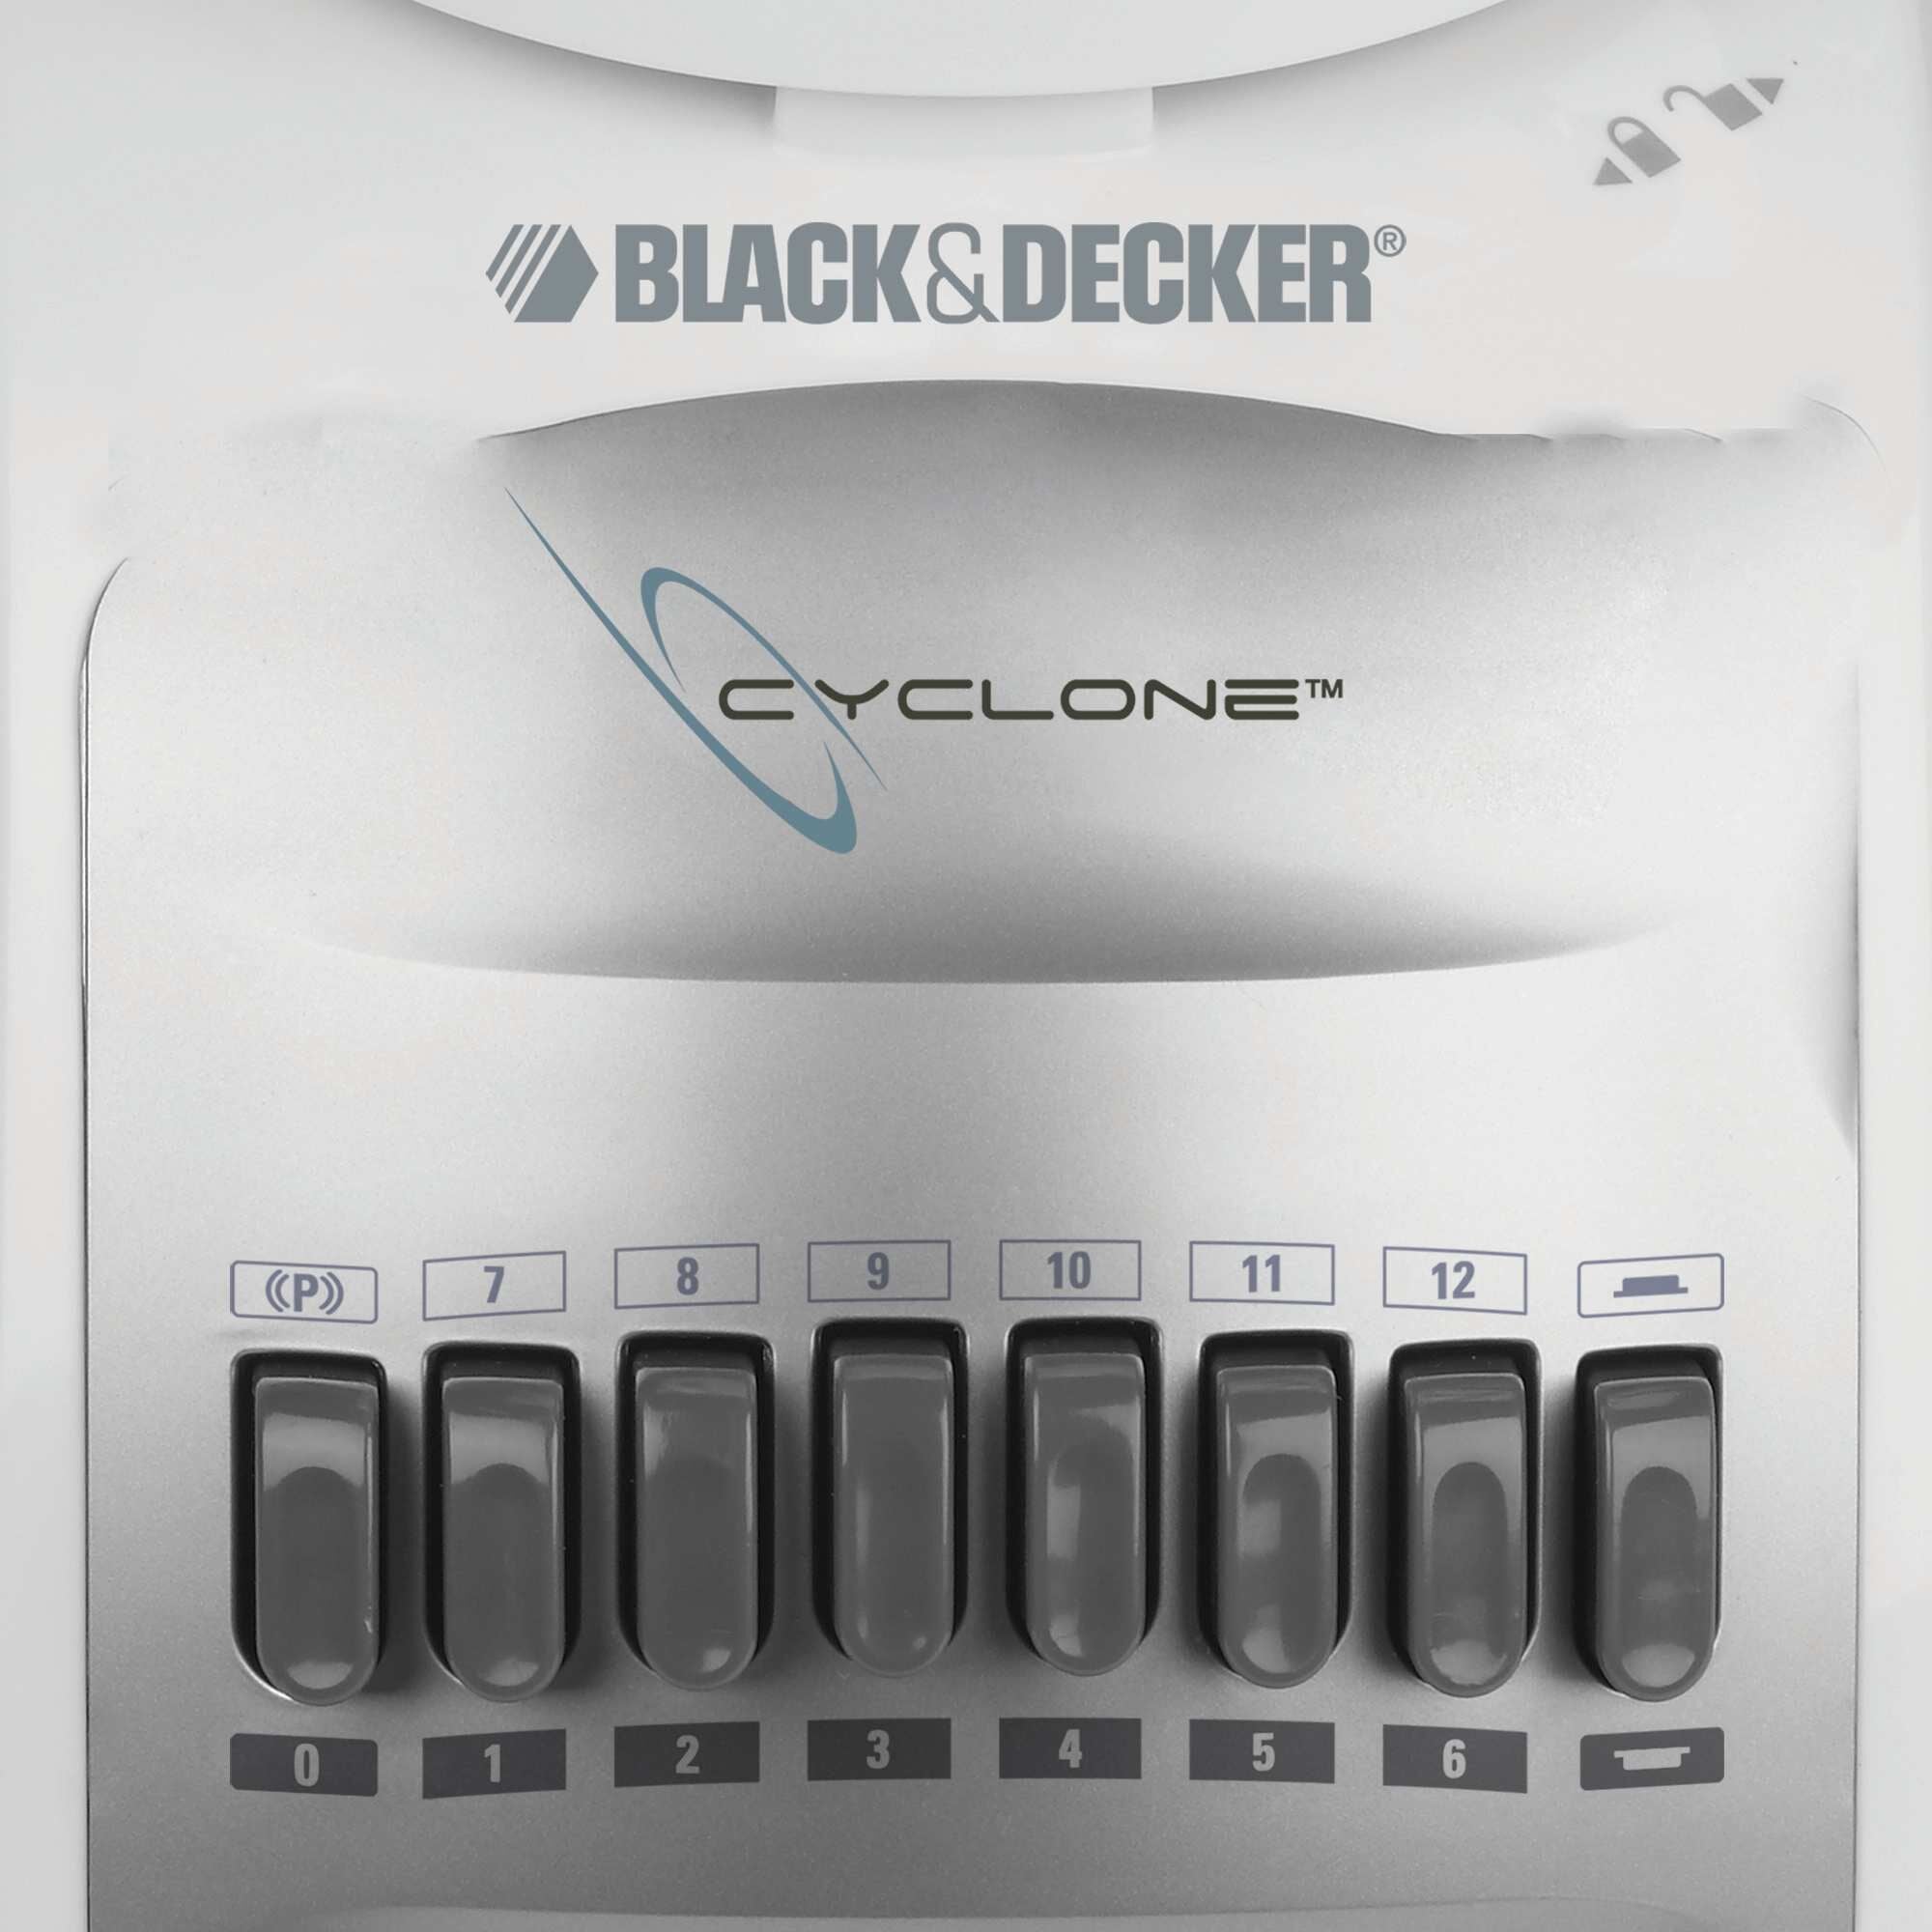 Black Decker Cyclone Blender